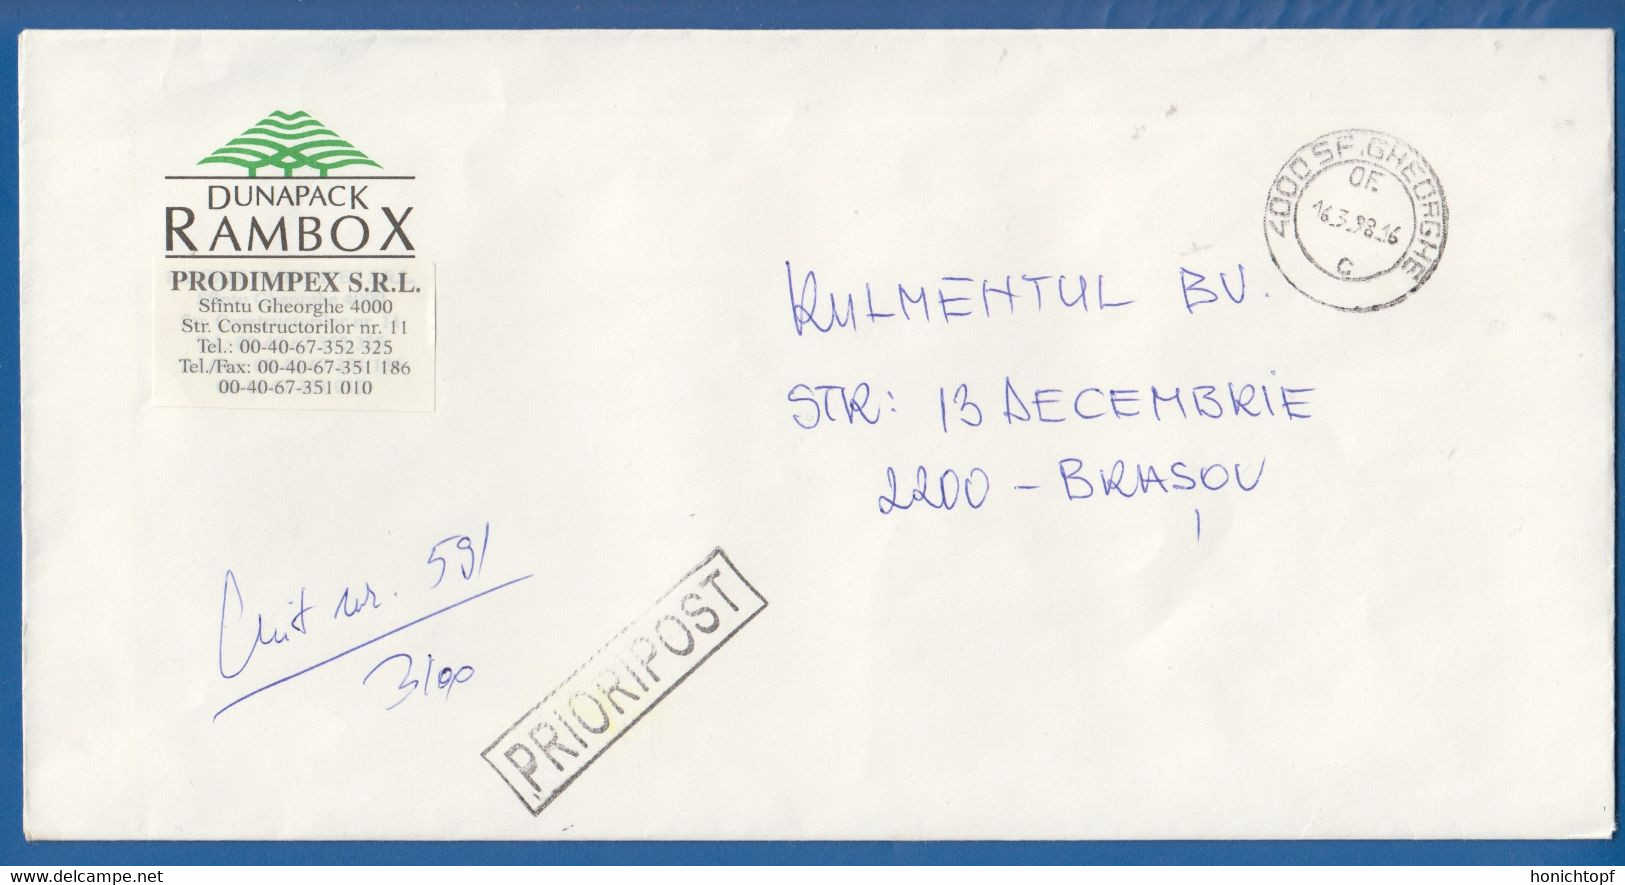 Rumänien; Brief Fabrica Rulmentul; 1998; Sf. Gheorghe; Romania - Covers & Documents